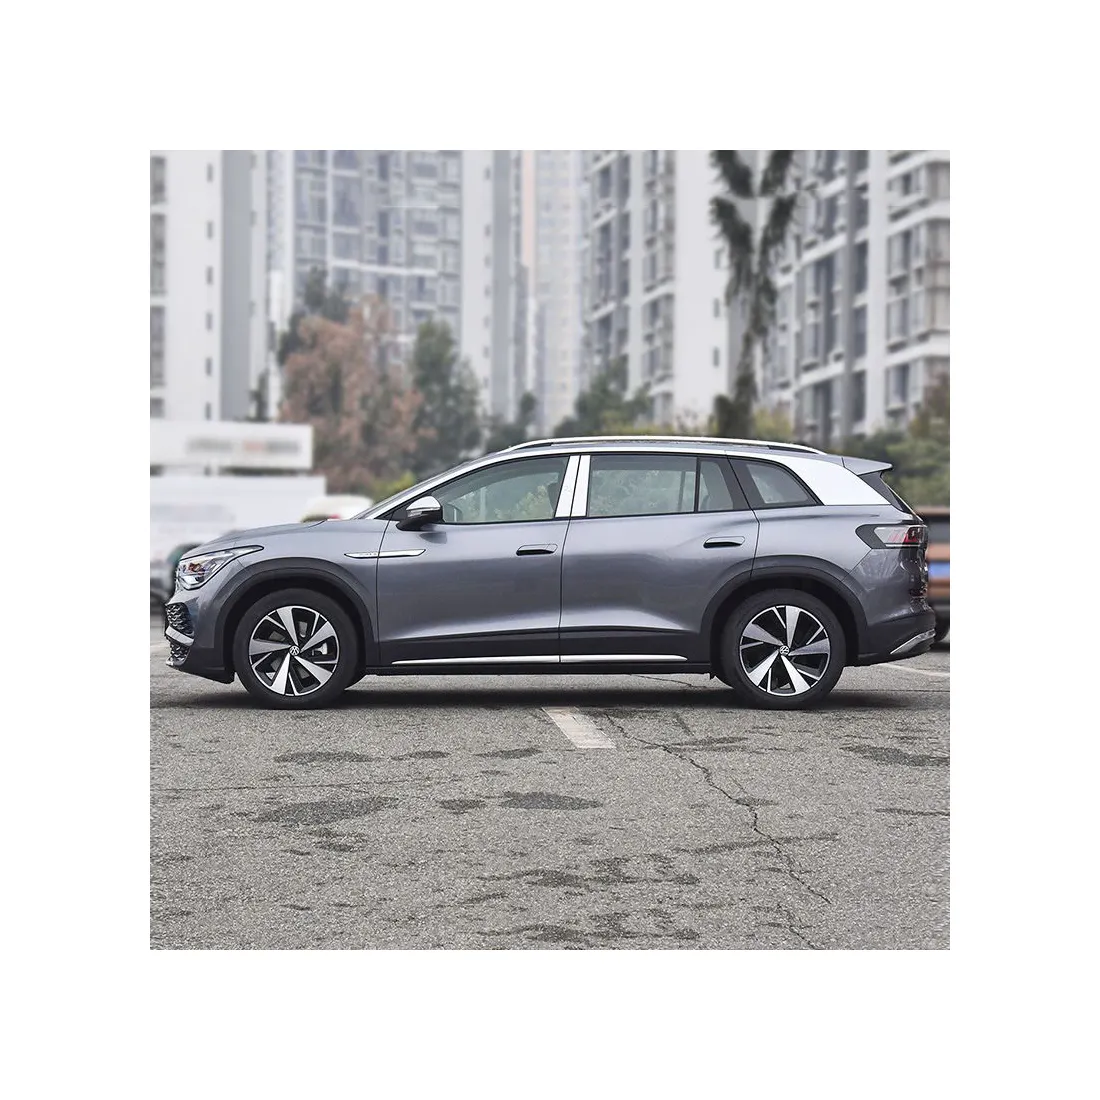 वोक्सवैगन आईडी6 एक्स चीनी इलेक्ट्रिक आयातित इलेक्ट्रिक कारें चीन से एसयूवी शुद्ध इलेक्ट्रिक कारें नई ऊर्जा वाहन बिक्री के लिए उपयोग की जाती हैं